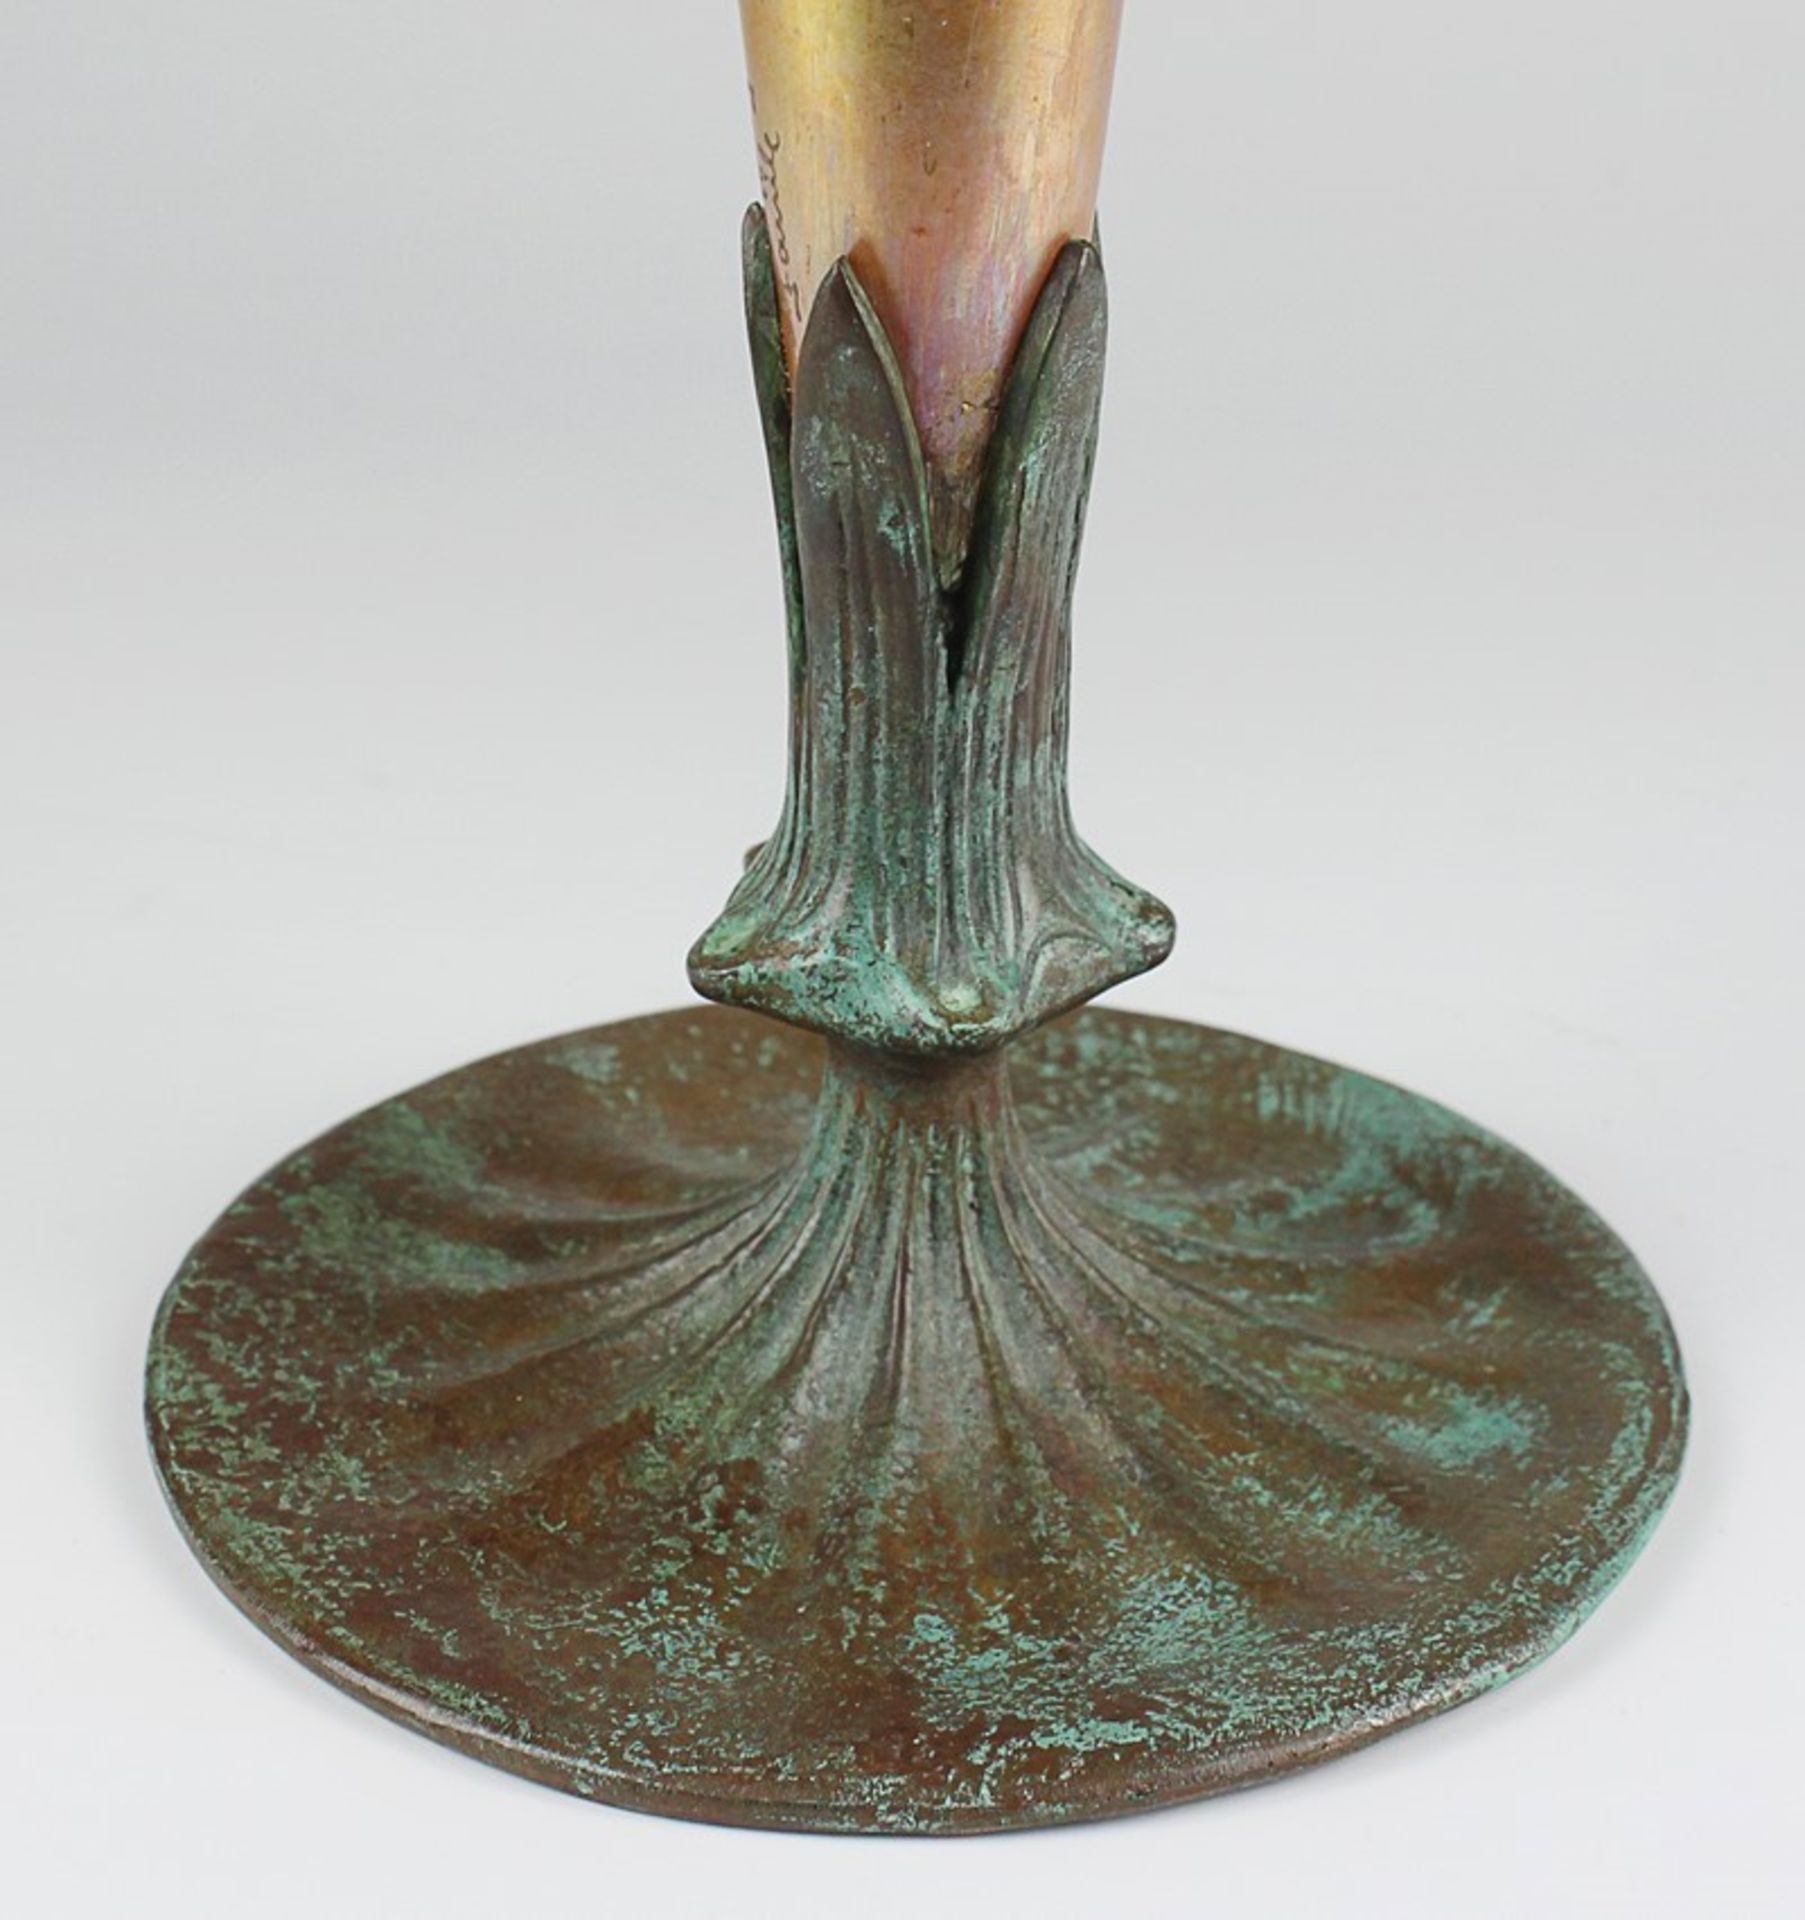 Tiffany - Trompetenvaseum 1900/10, Jugendstil, Louis Comfort Tiffany, New York, sog. Favrile-Glas, - Bild 4 aus 11